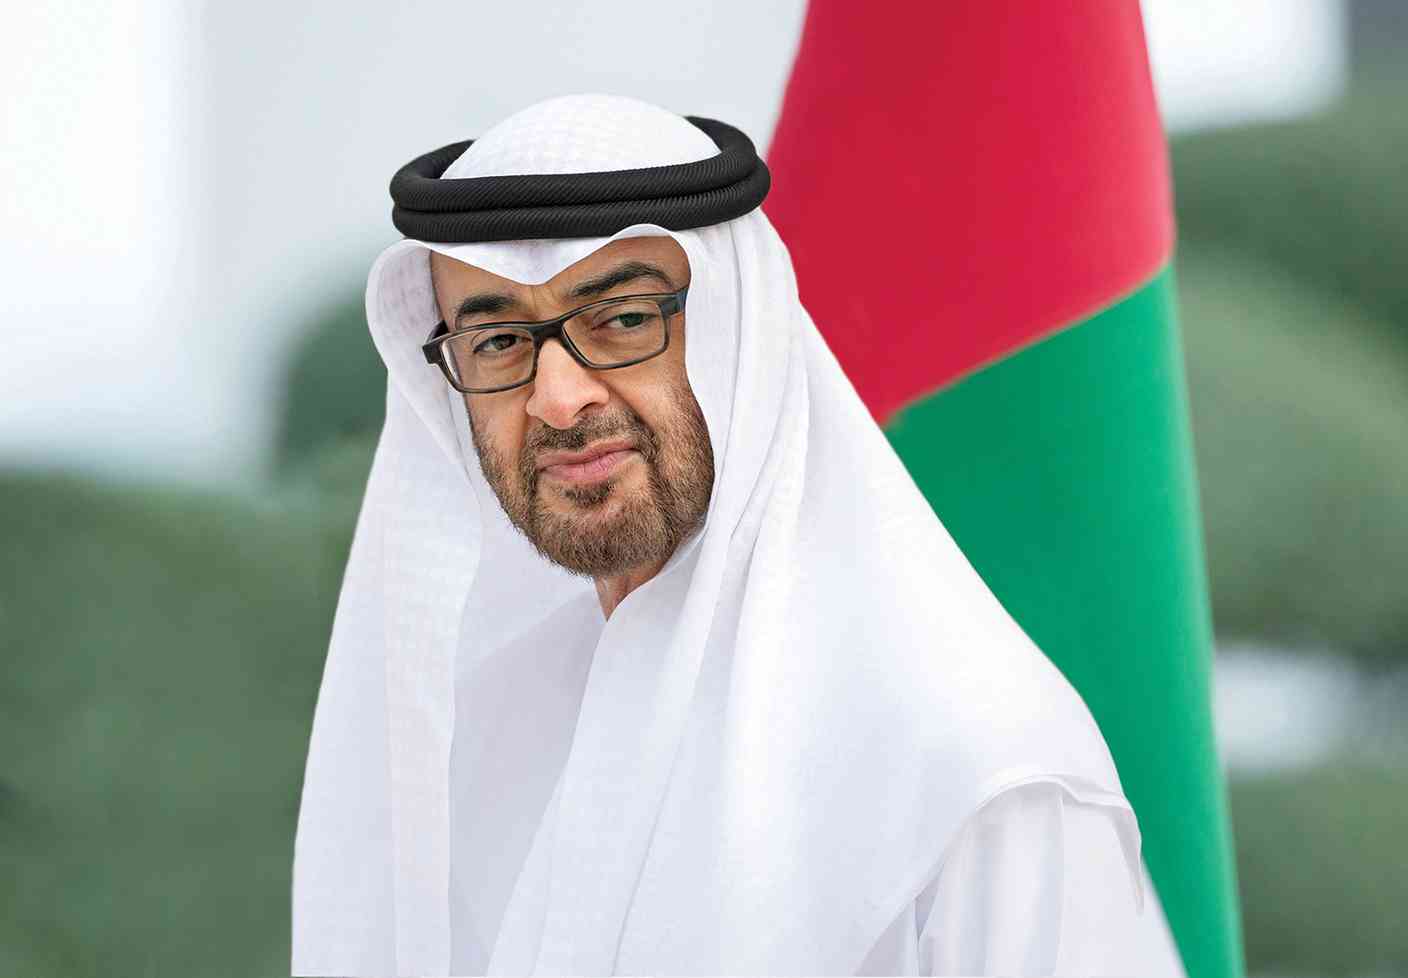 كأس العالم 2022 : الرئيس الاماراتي ينضاف إلى قادة الدول الذين اتصلوا بجلالة الملك لتهنئته